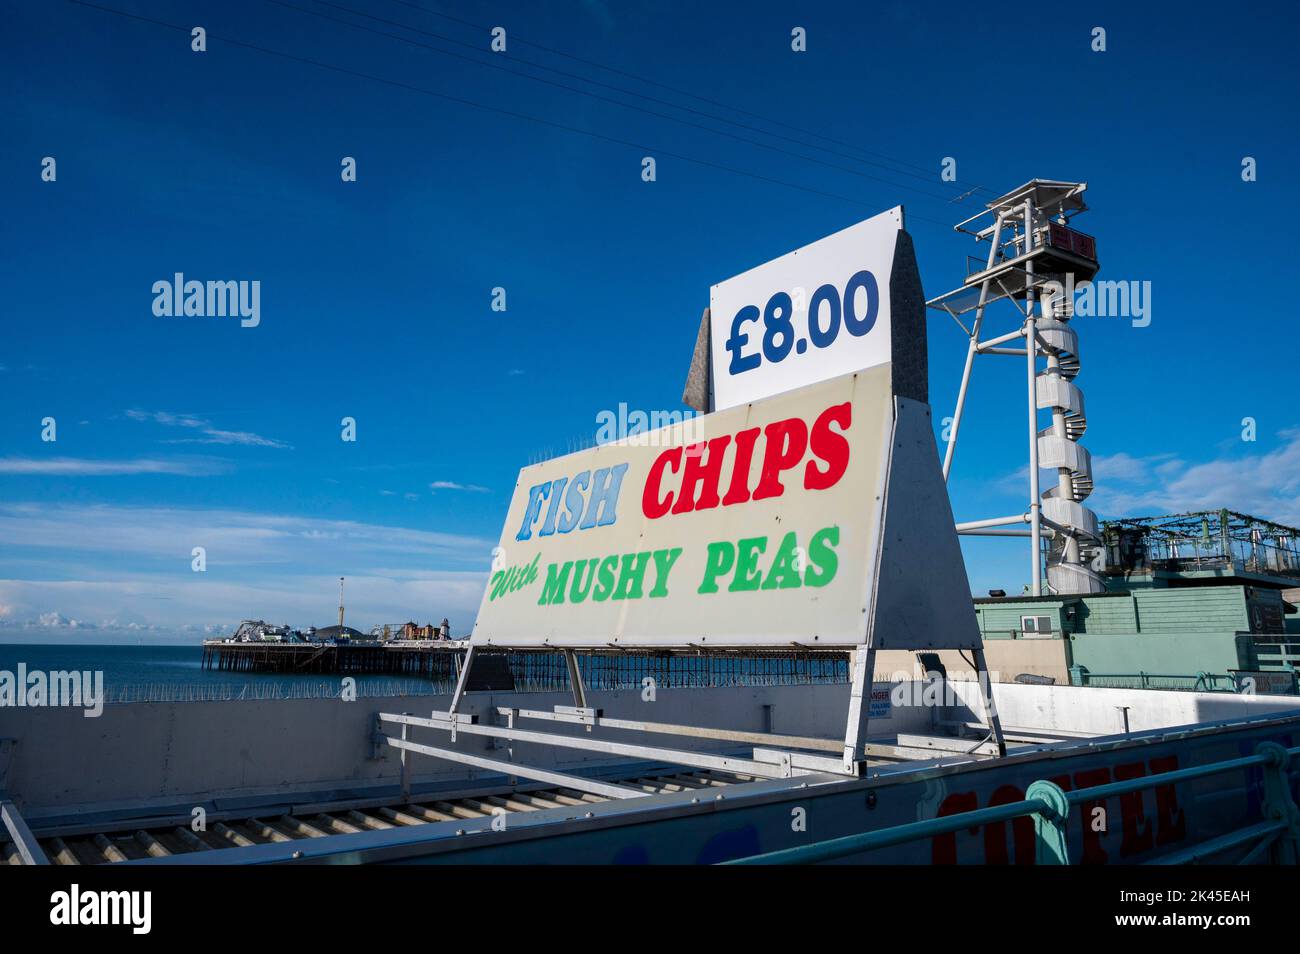 Le prix des Fish & chips et des pois moshy dans un café de bord de mer de Brighton, Sussex, Angleterre, Royaume-Uni Banque D'Images